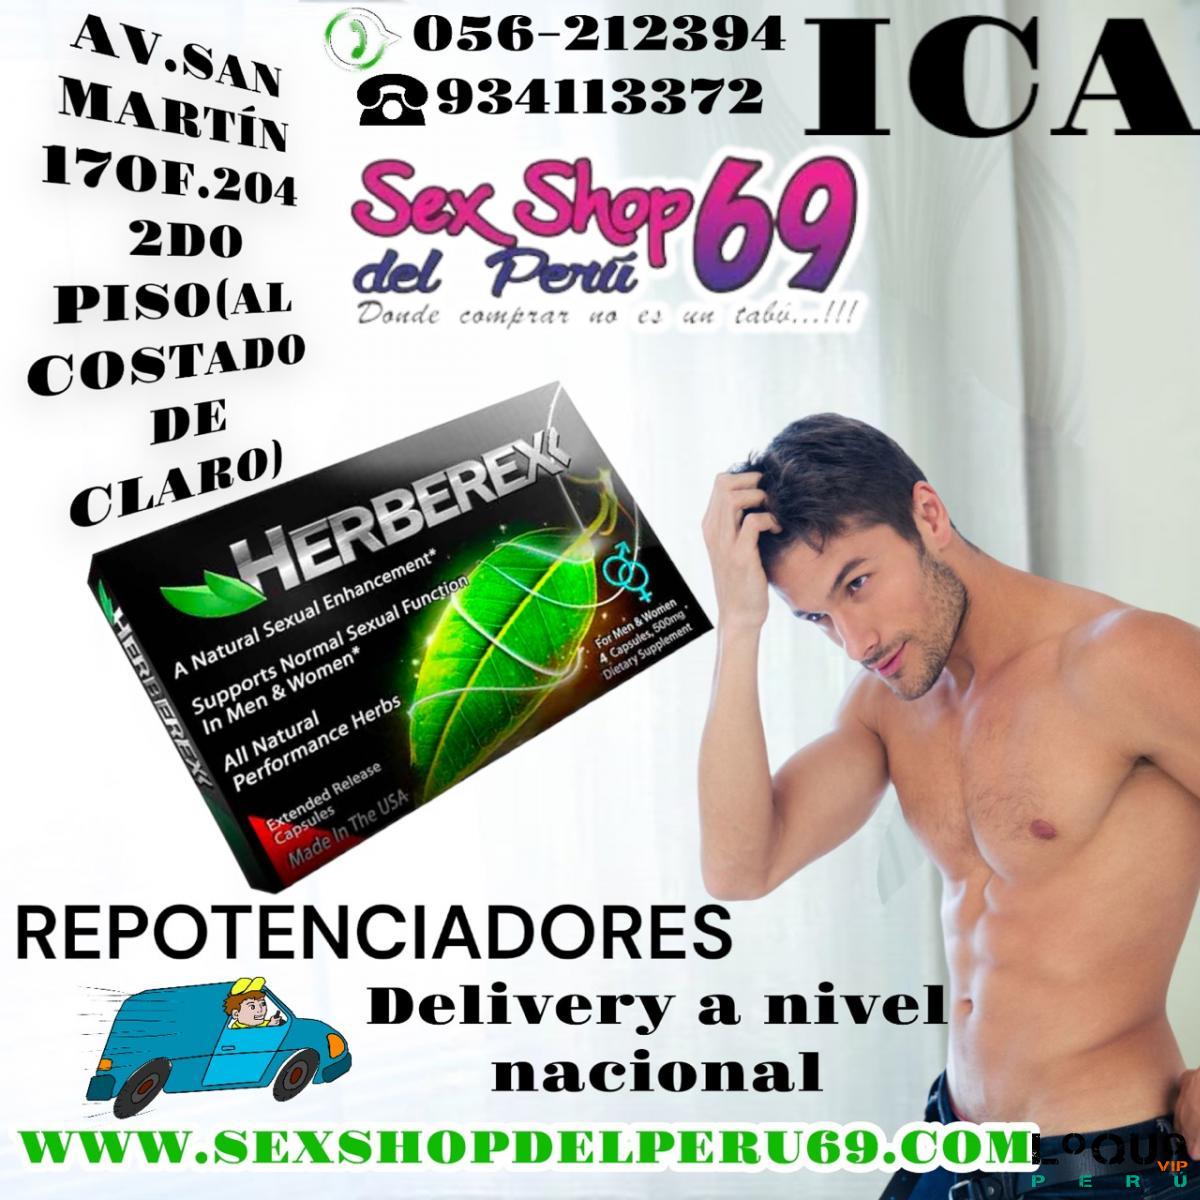 Sex Shop Arequipa: retardantes/ potenciadores sexuales natural / titan gel